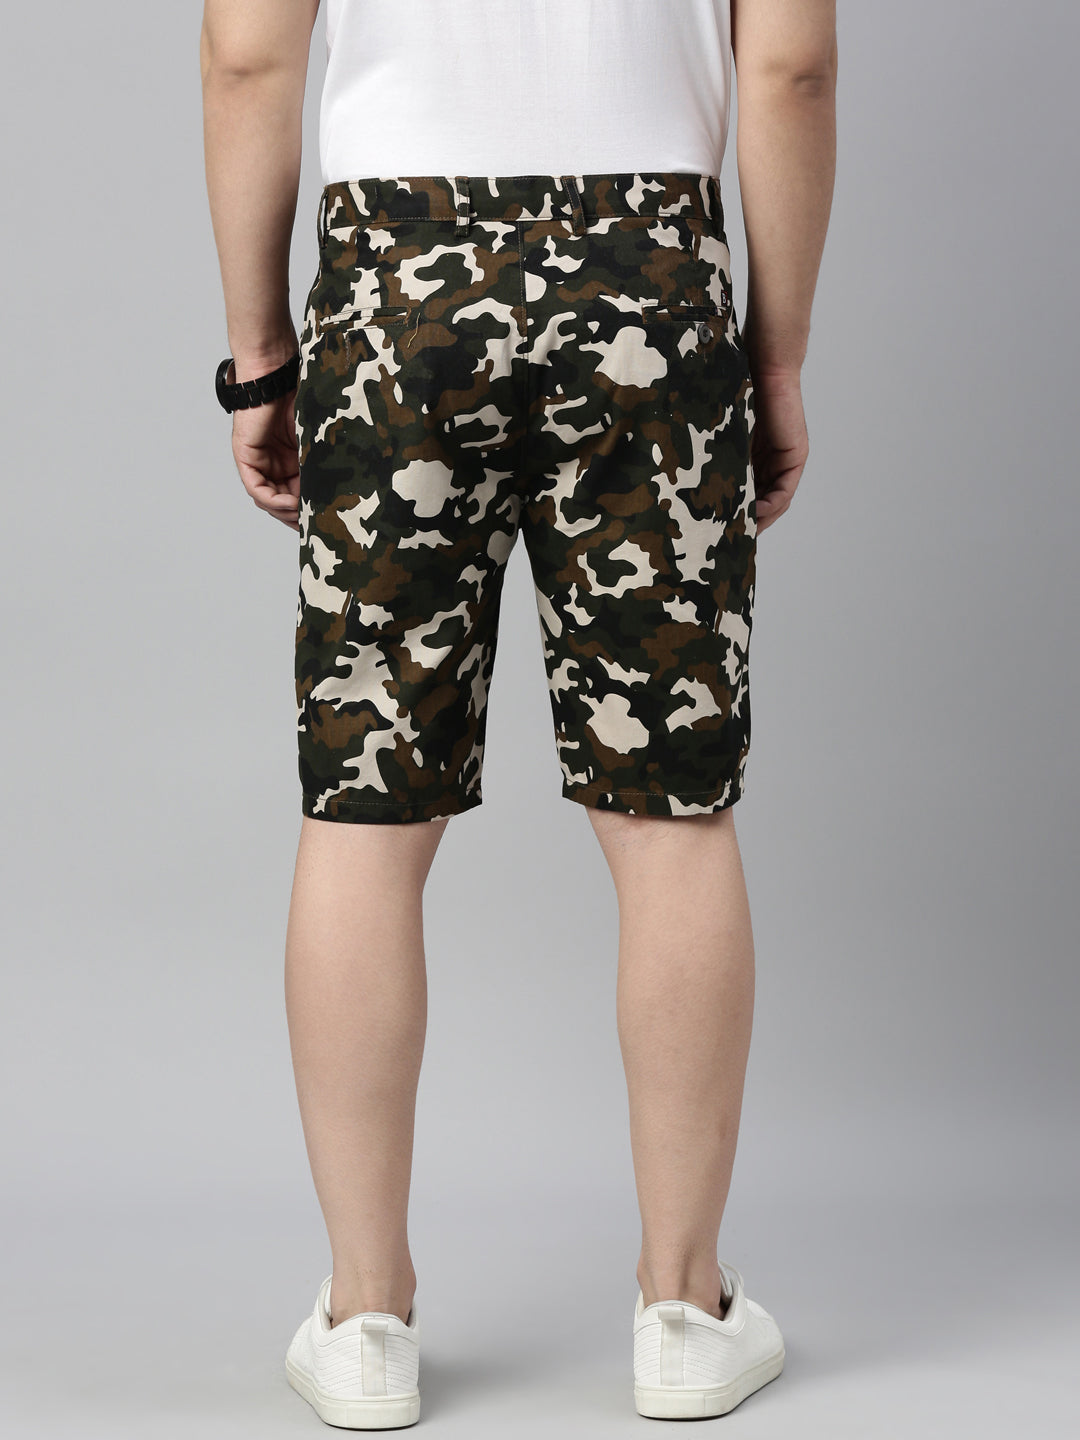 Cream Camouflage Shorts Men's Shorts Bushirt   